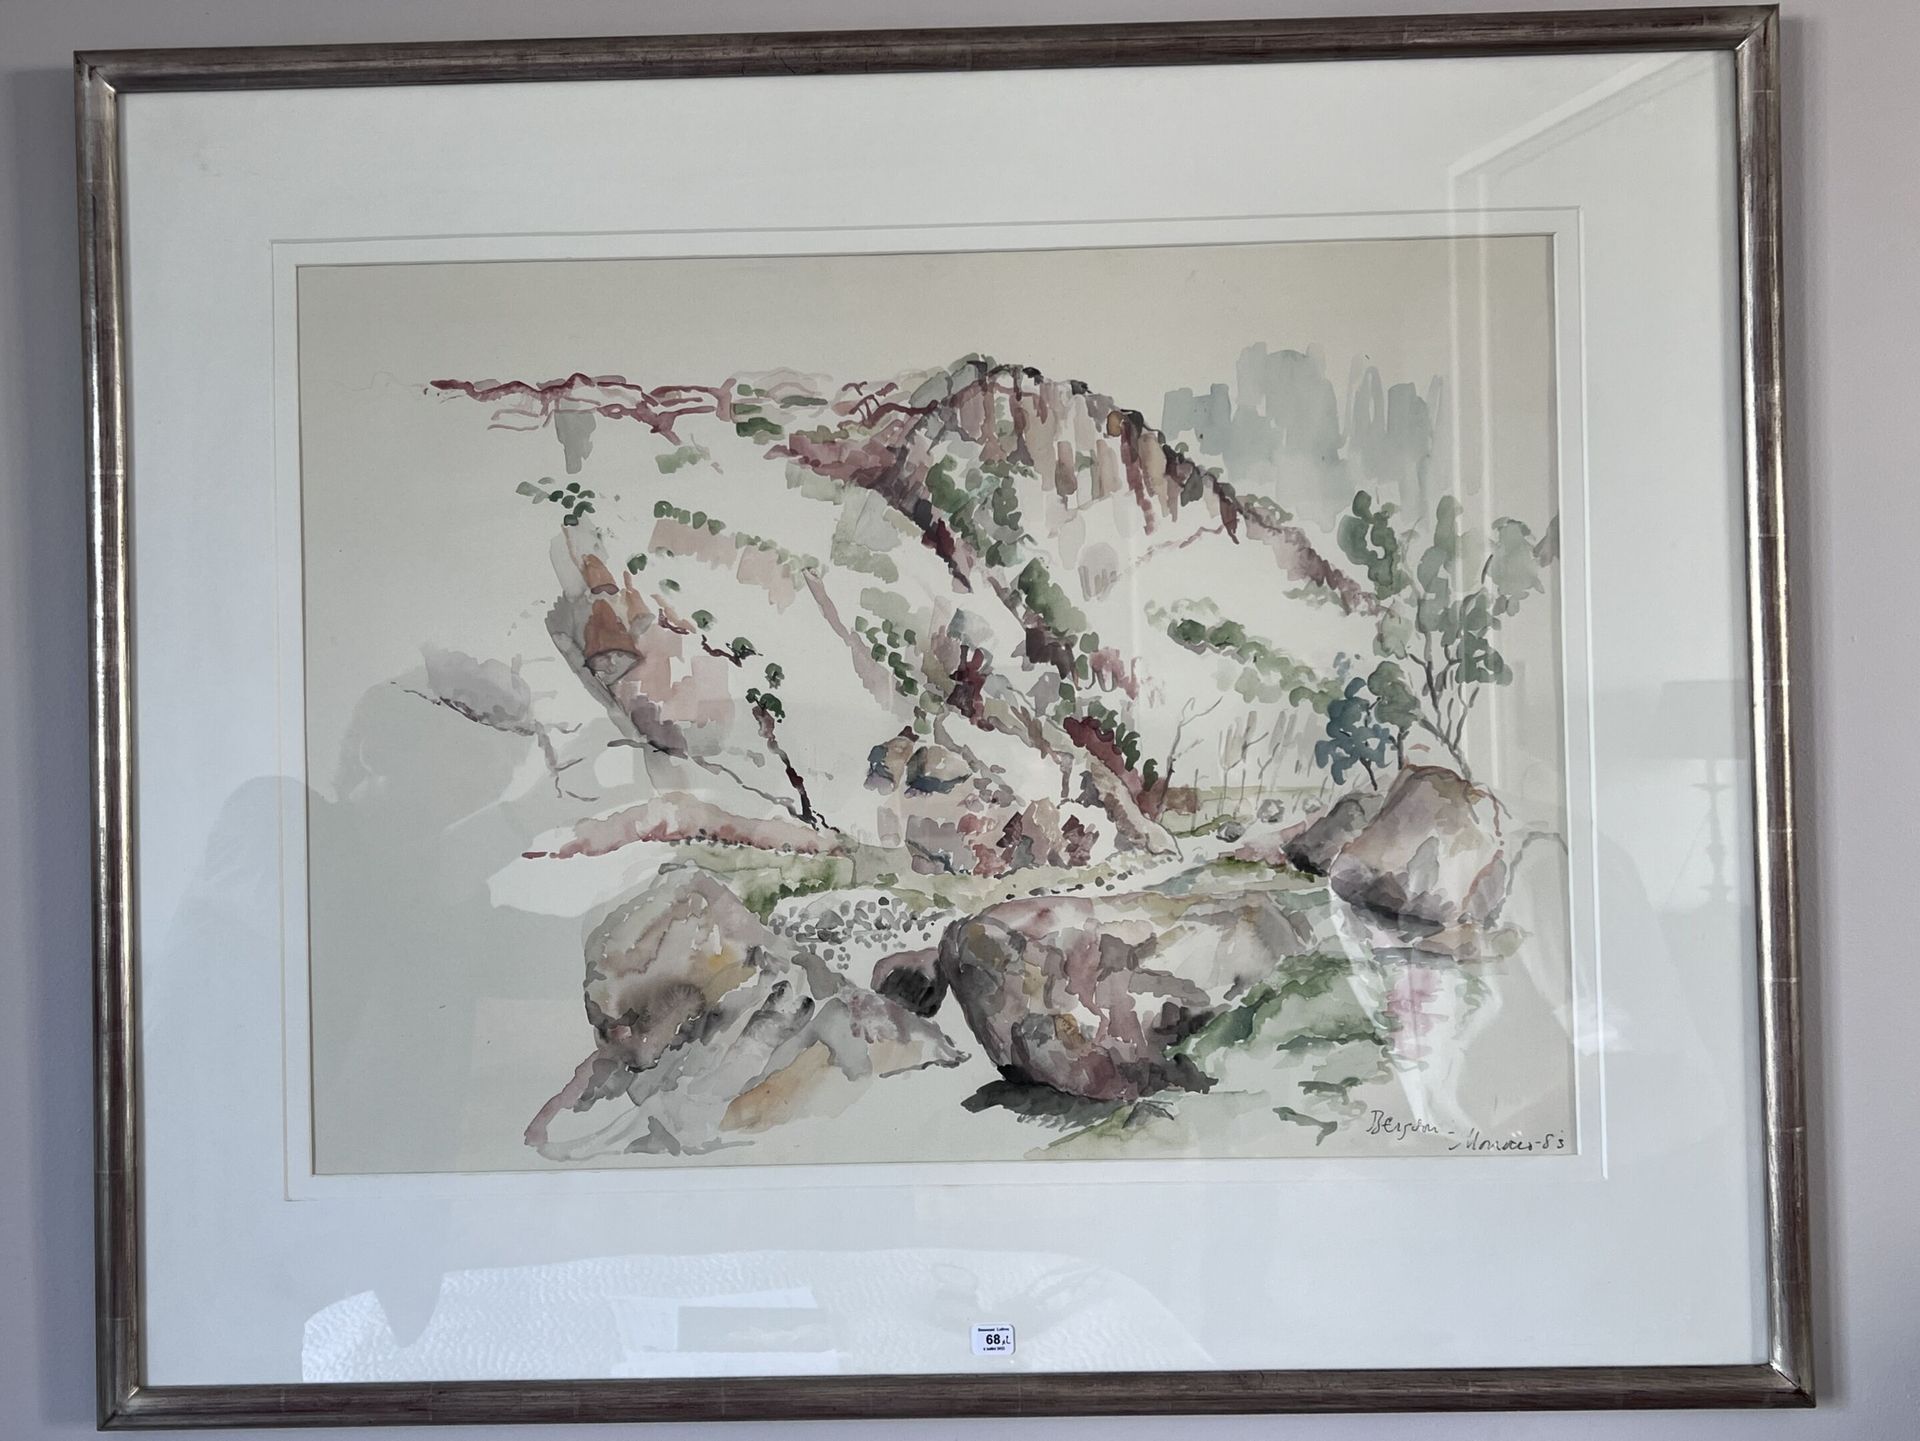 Null 两所现代学校

"夏天的山涧

水彩画，署名柏格森，日期1983年

49,5 x 69,5 cm

"海葵

水彩画

24,5 x 32,5 cm